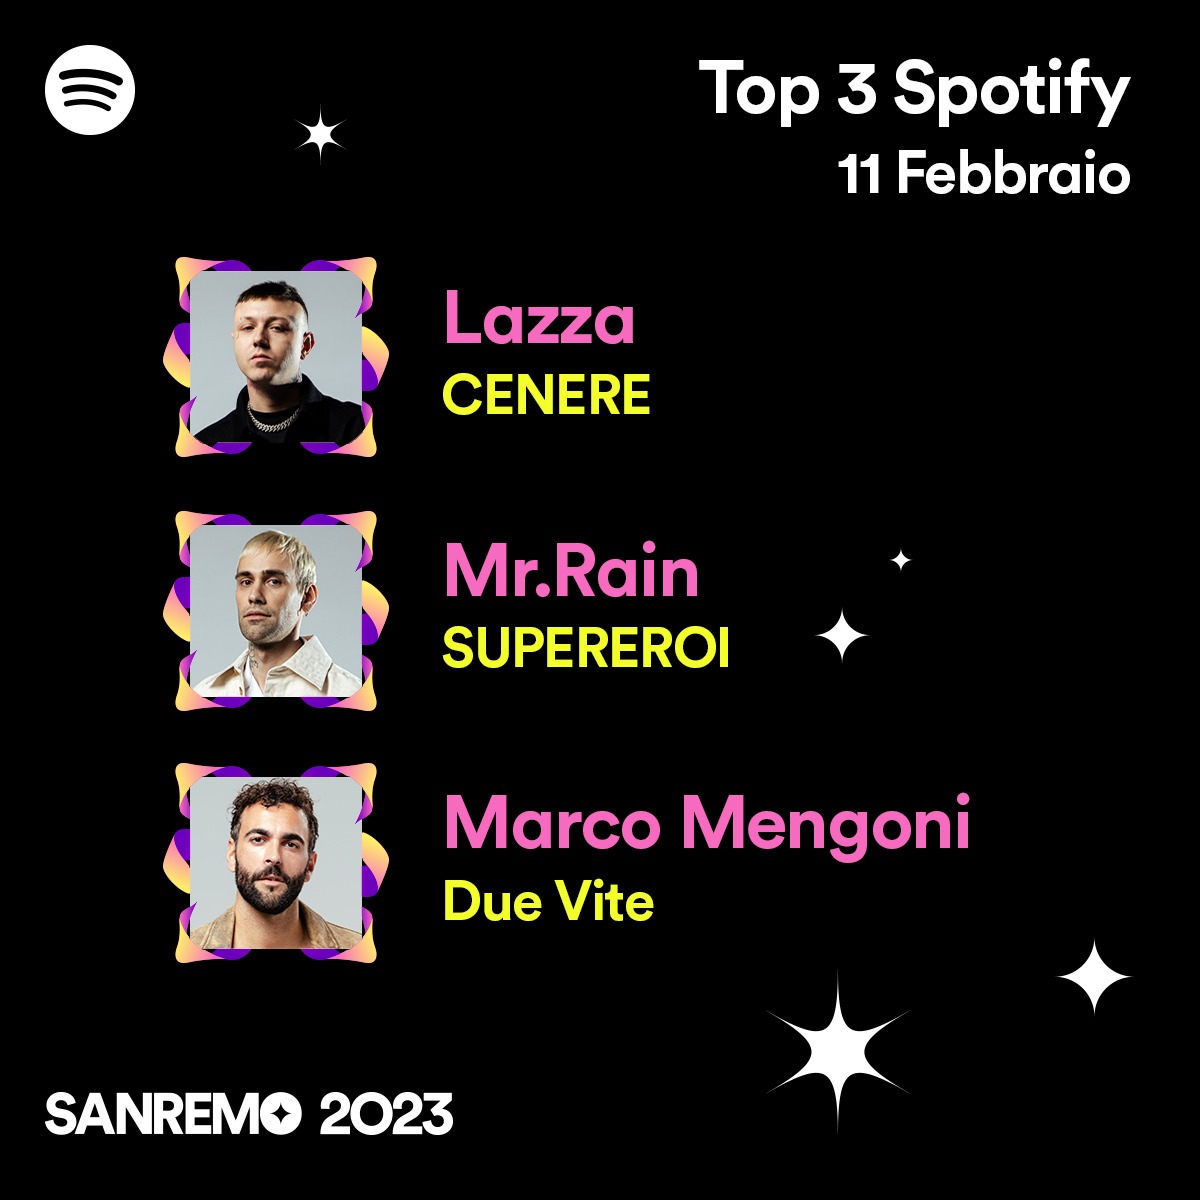 Sanremo 2023, quali sono le canzoni più ascoltate su Spotify?